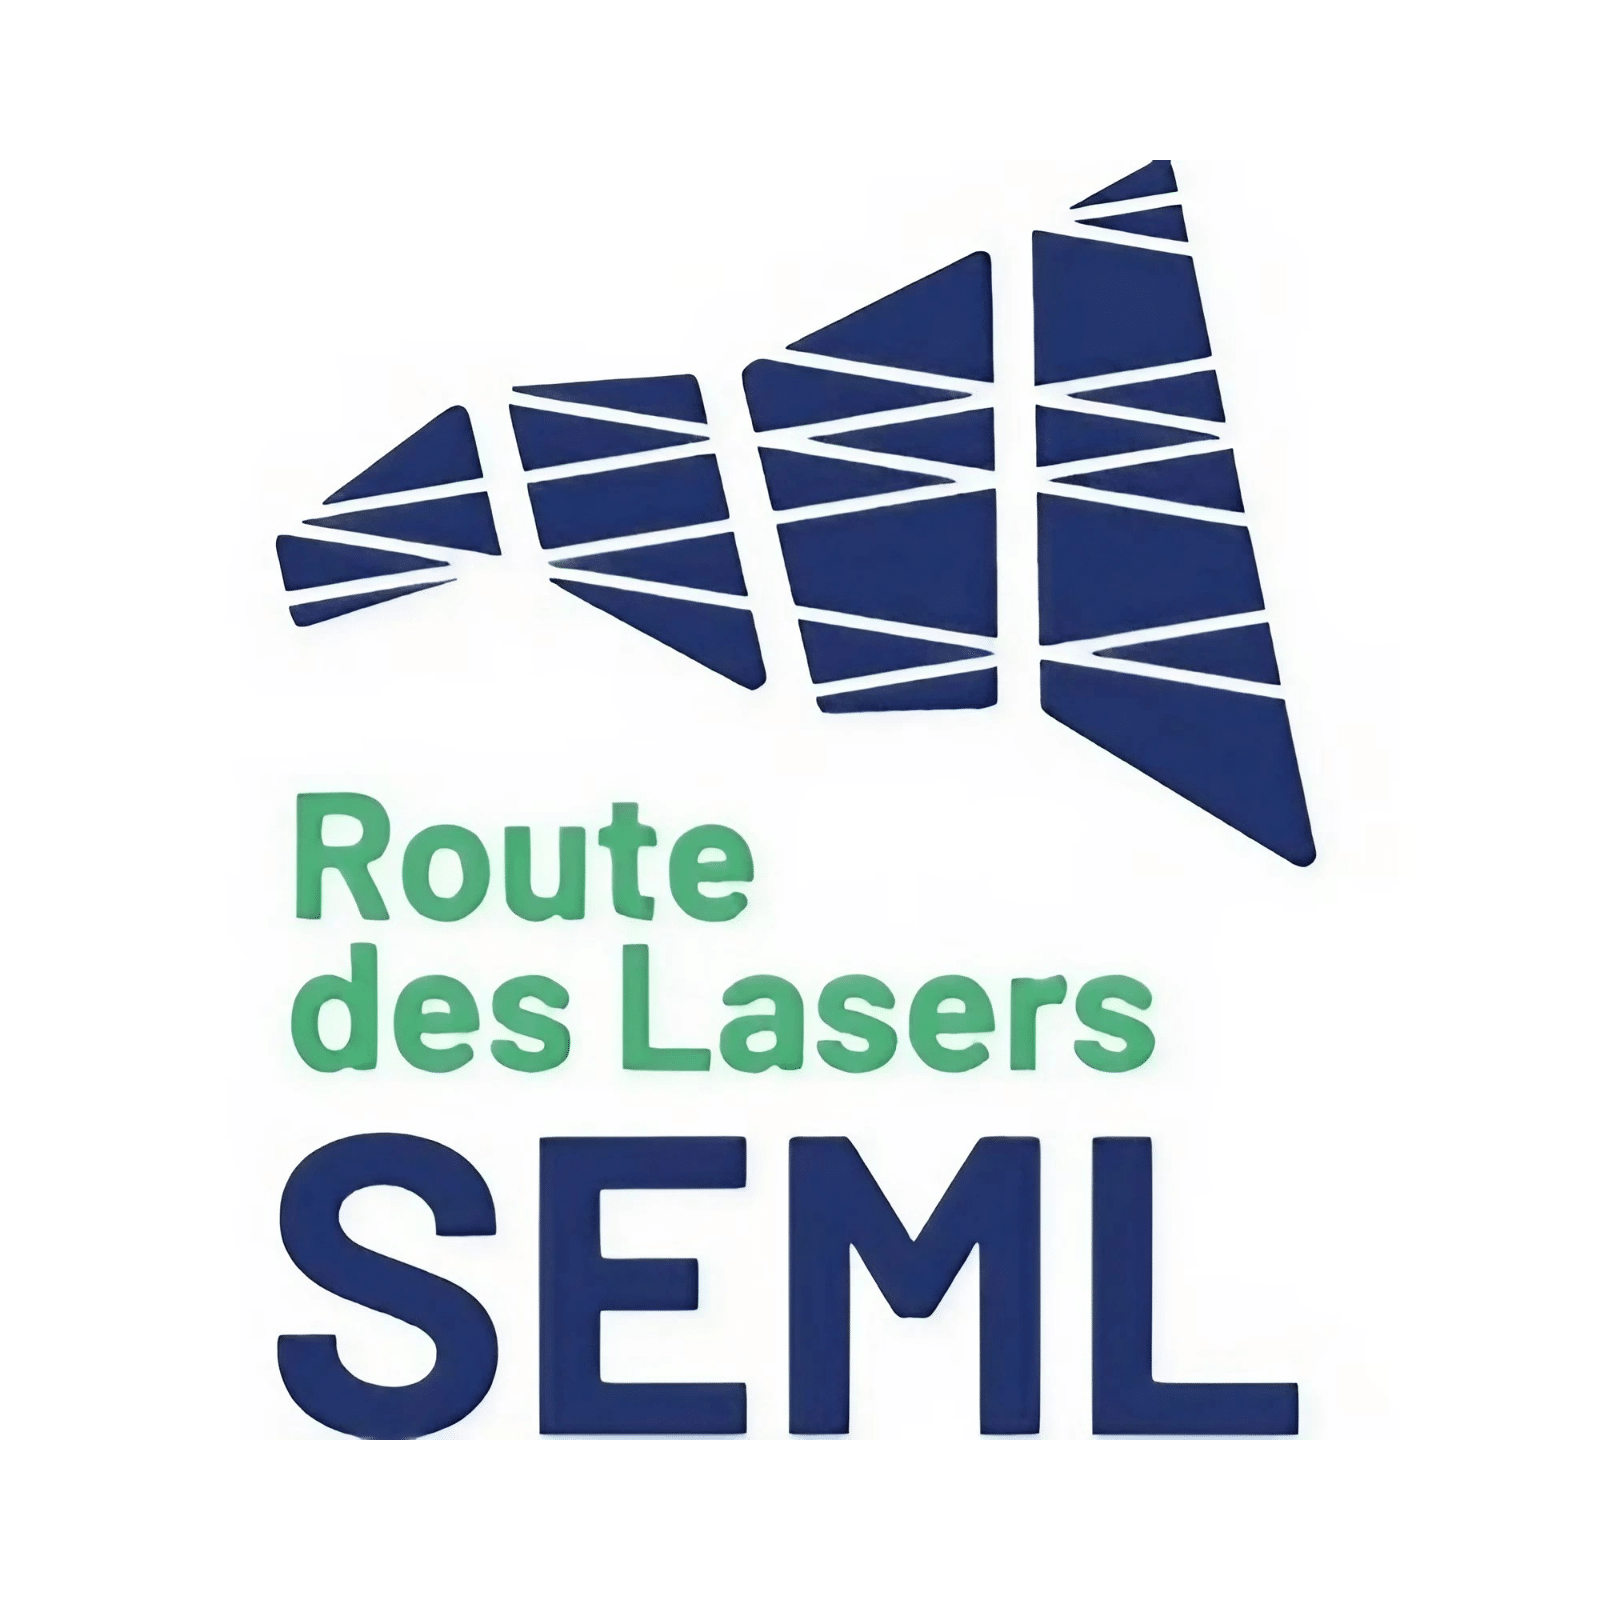 LOGO SEML Route des lasers